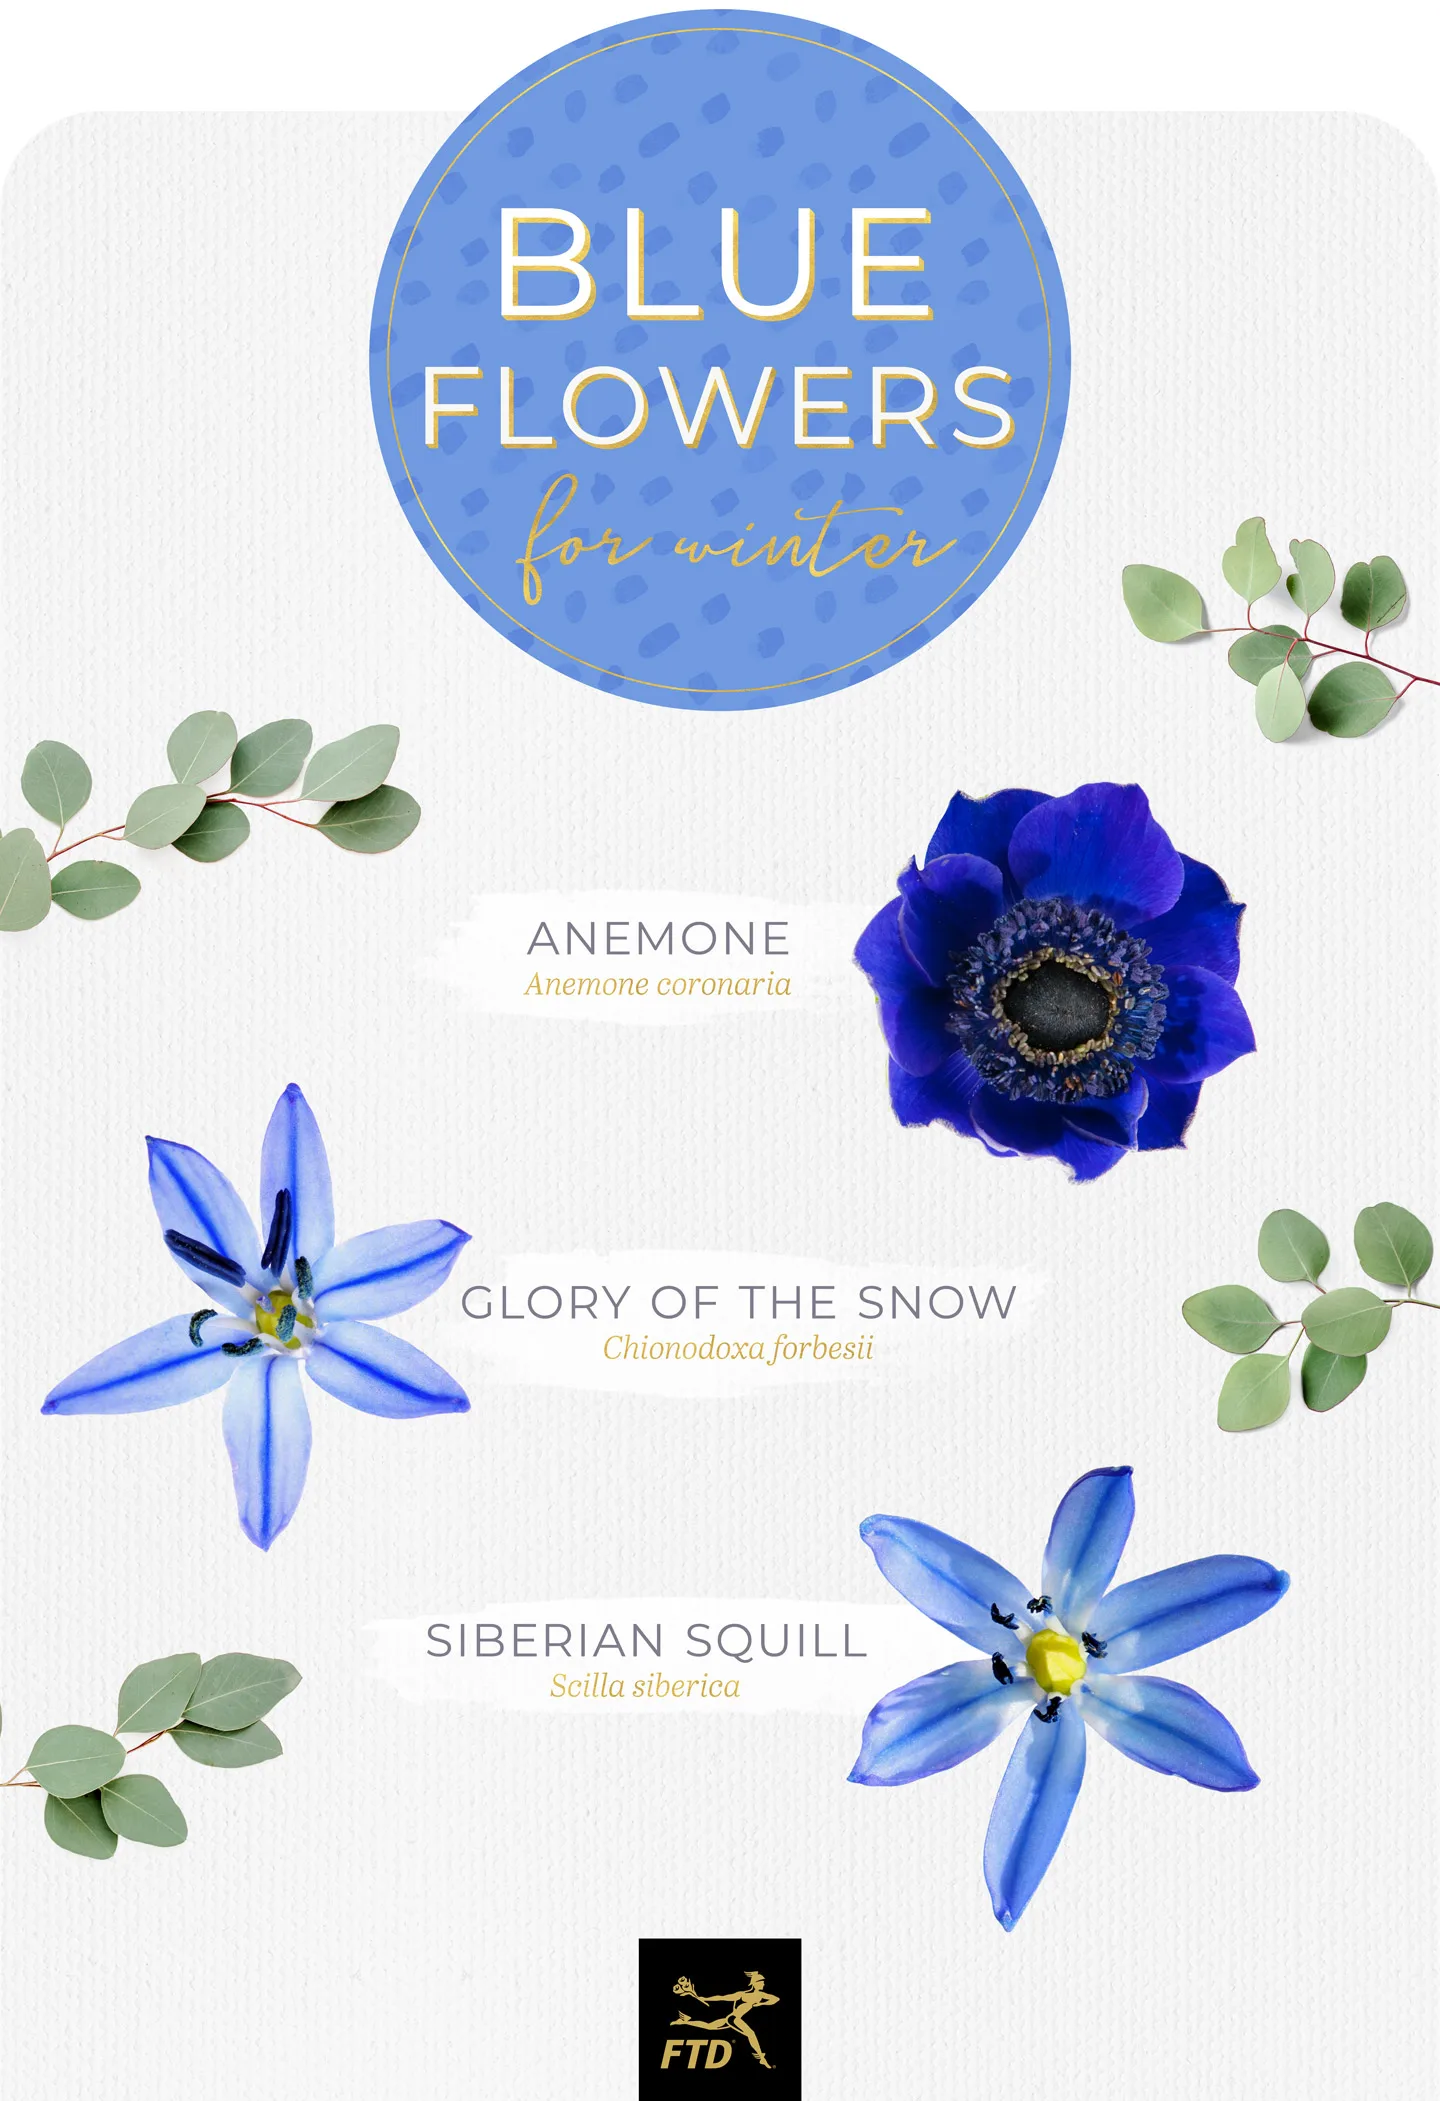 blue-flowers-winter